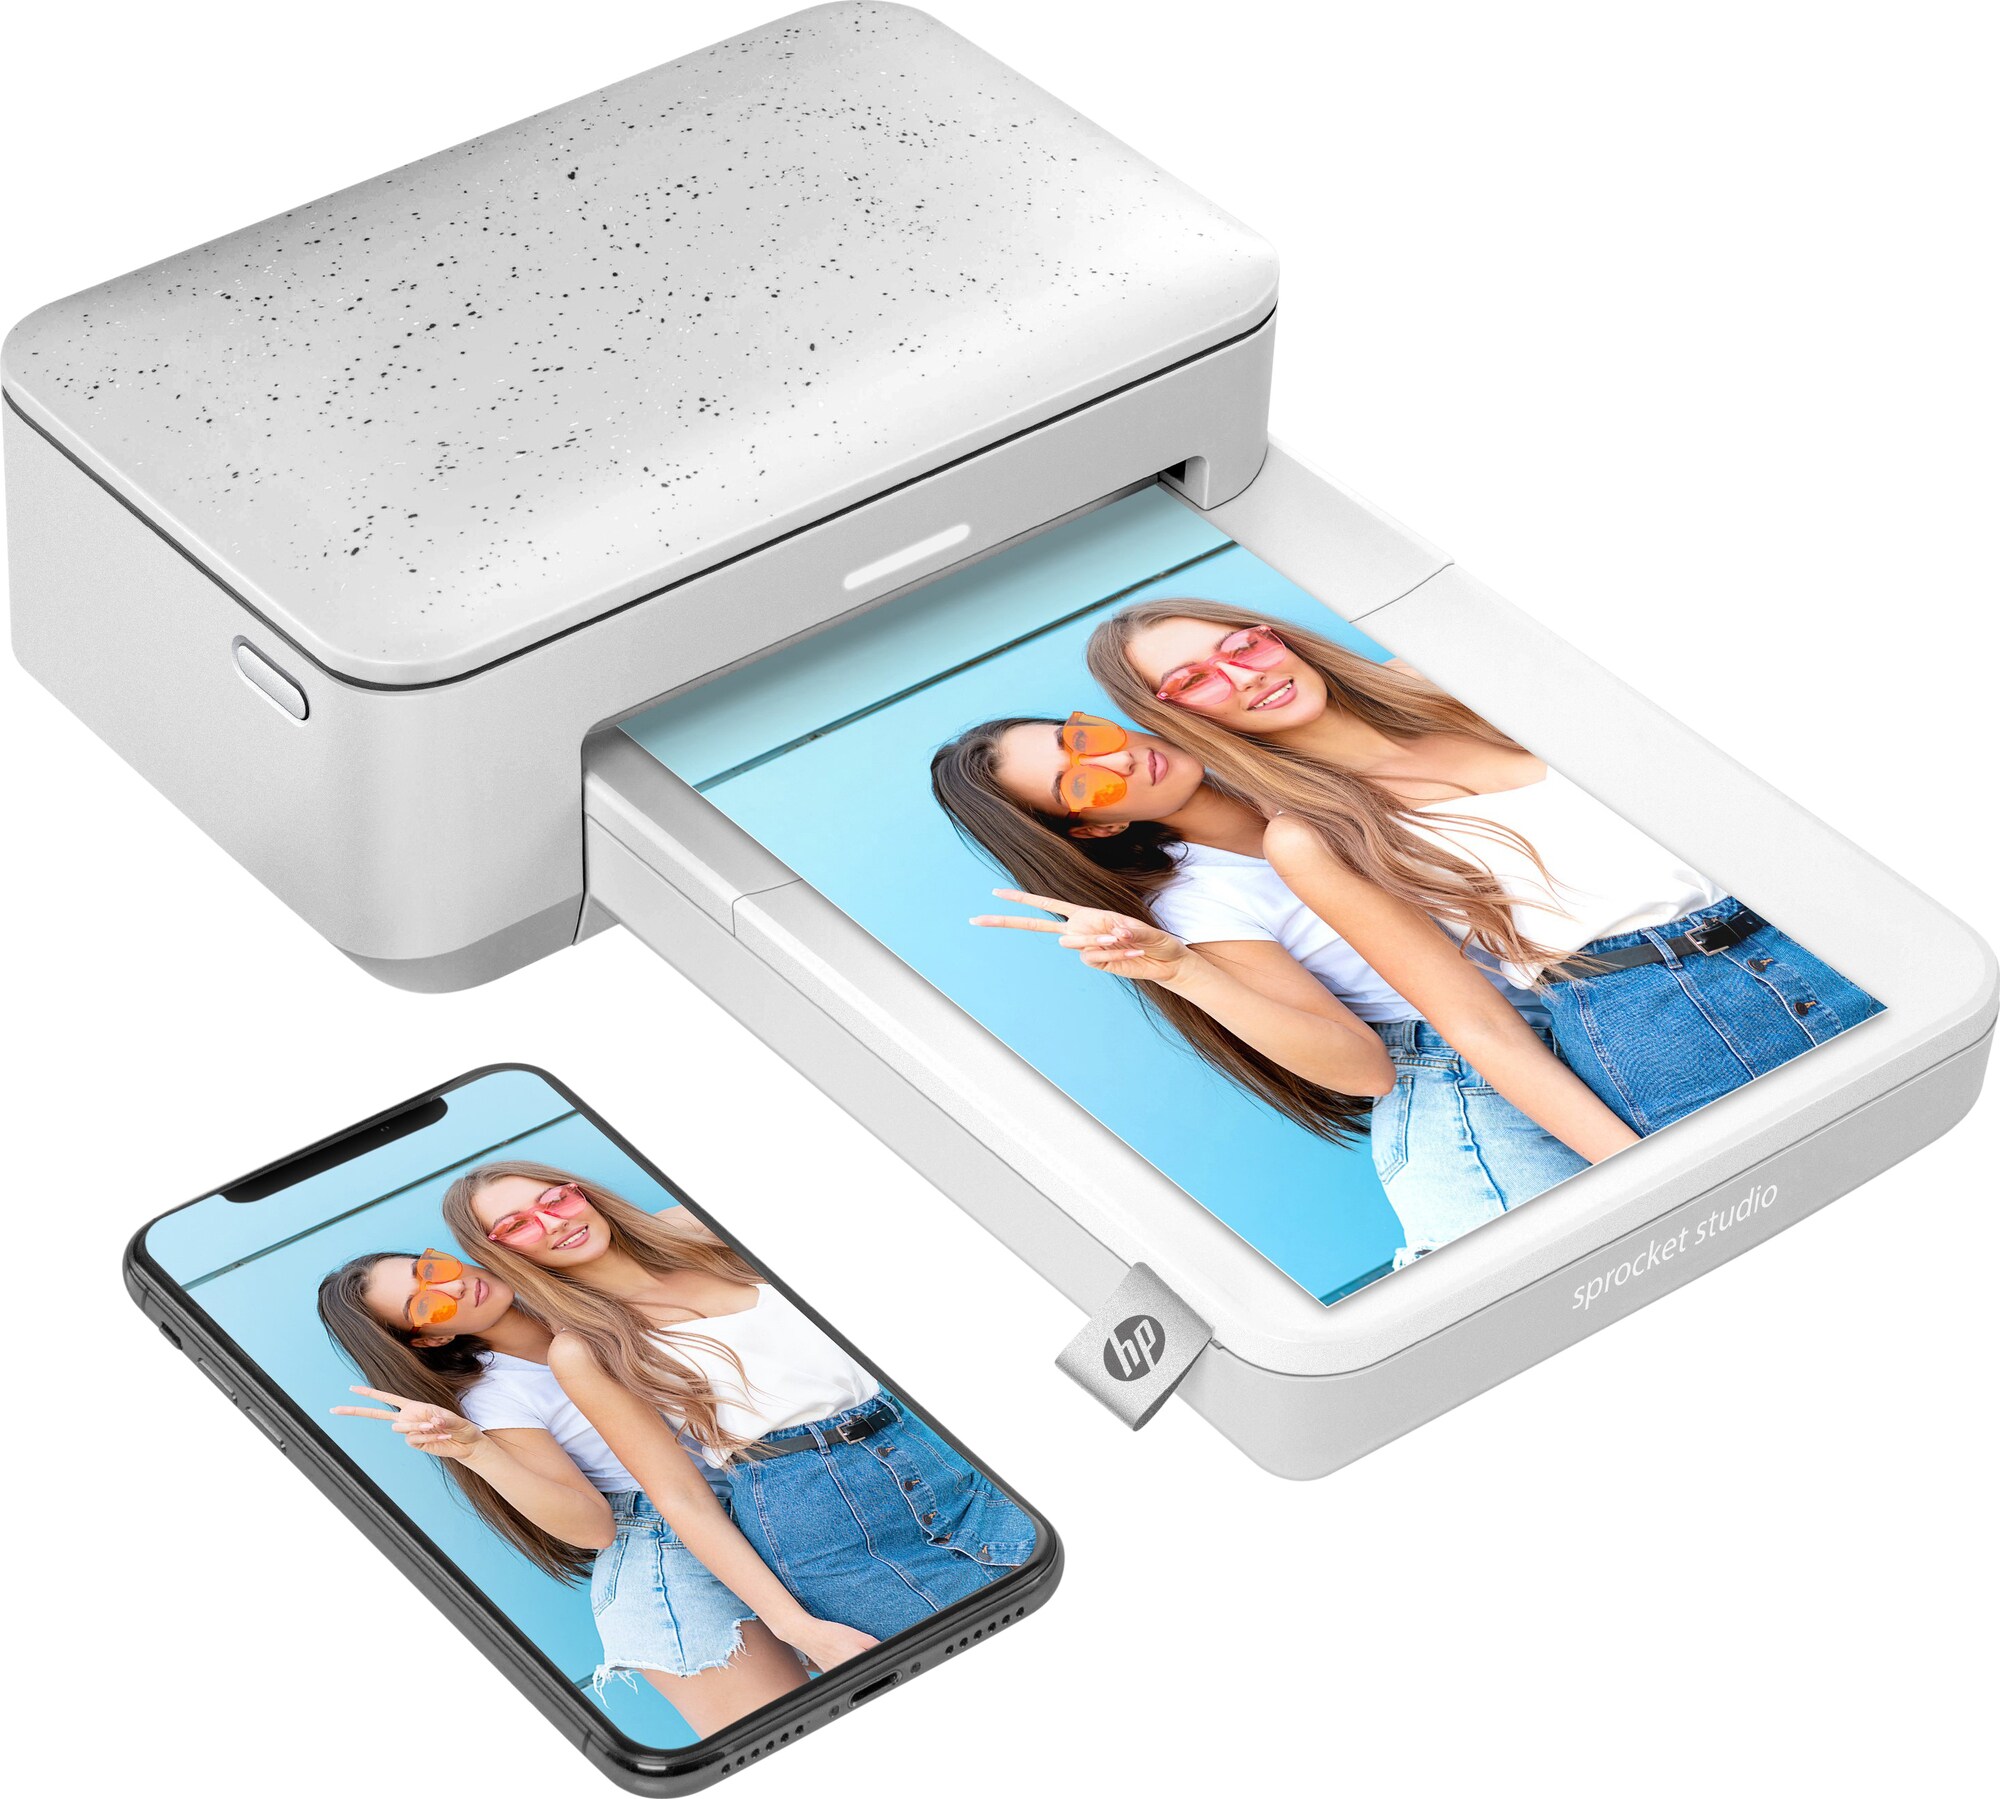 HP Sprocket Studio mobil fotoskriver (hvit) - Elkjøp